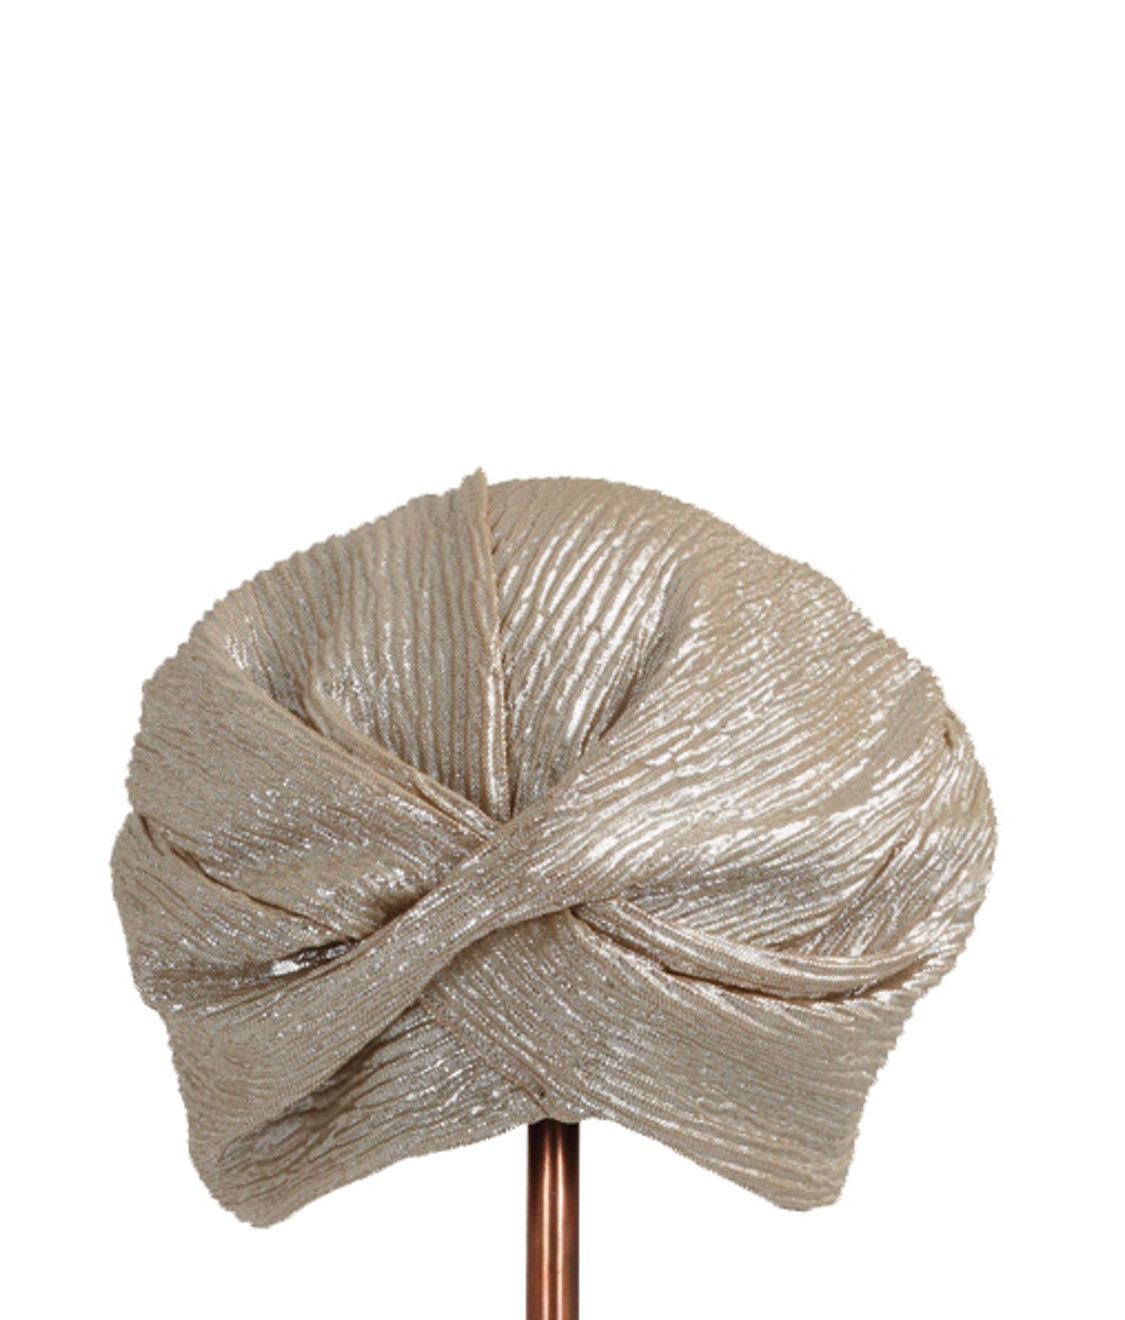 shop Flapper Sales Accessori: Cappelli Flapper, modello Lola, turbante, dettagli dorati, tessuto plissé.

Composizione: 100% poliestere. number 1544